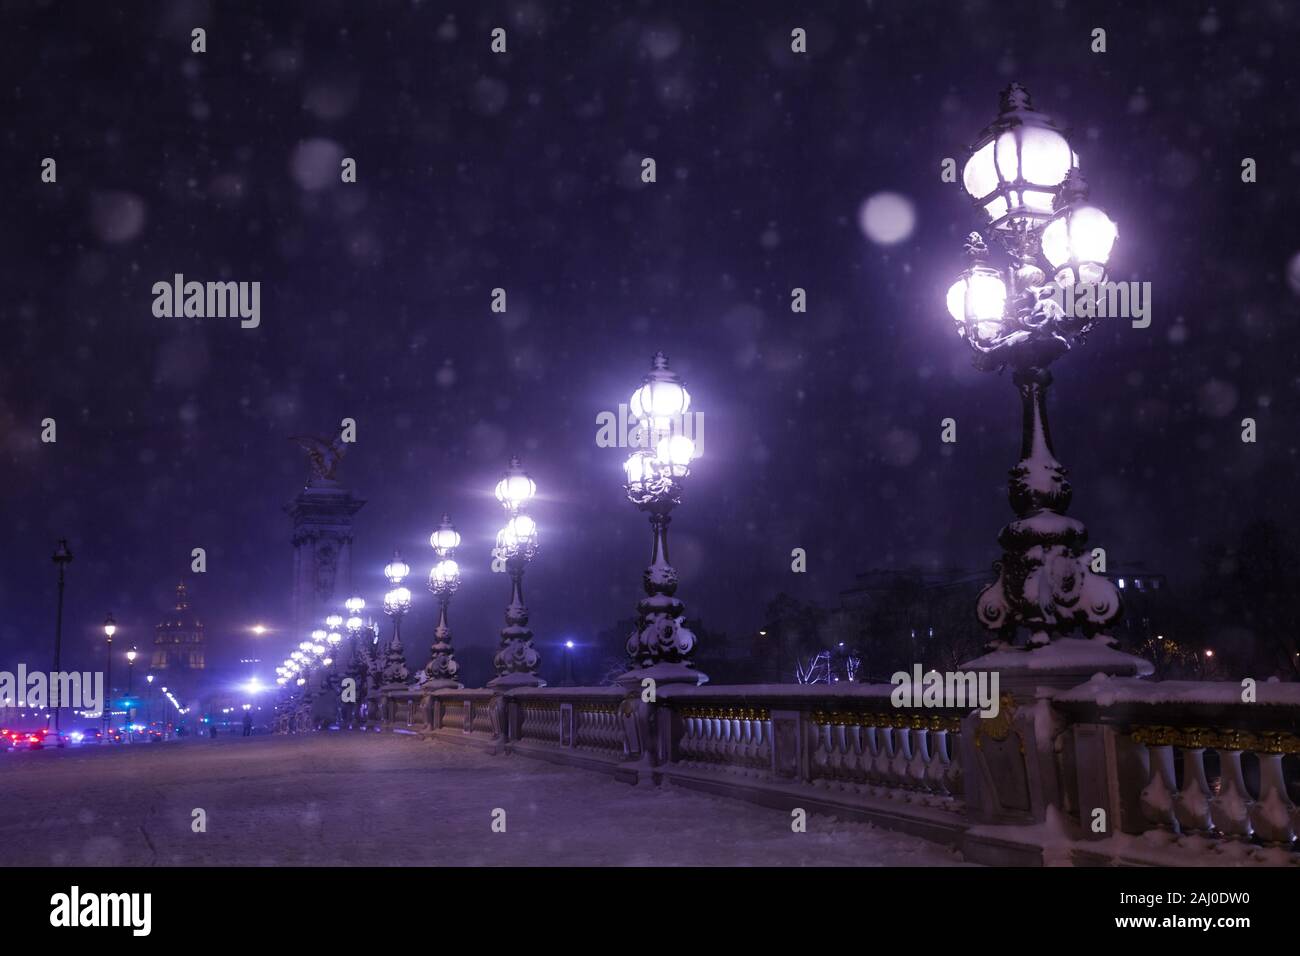 Illumination on Alexander 3 bridge, night and snow Stock Photo